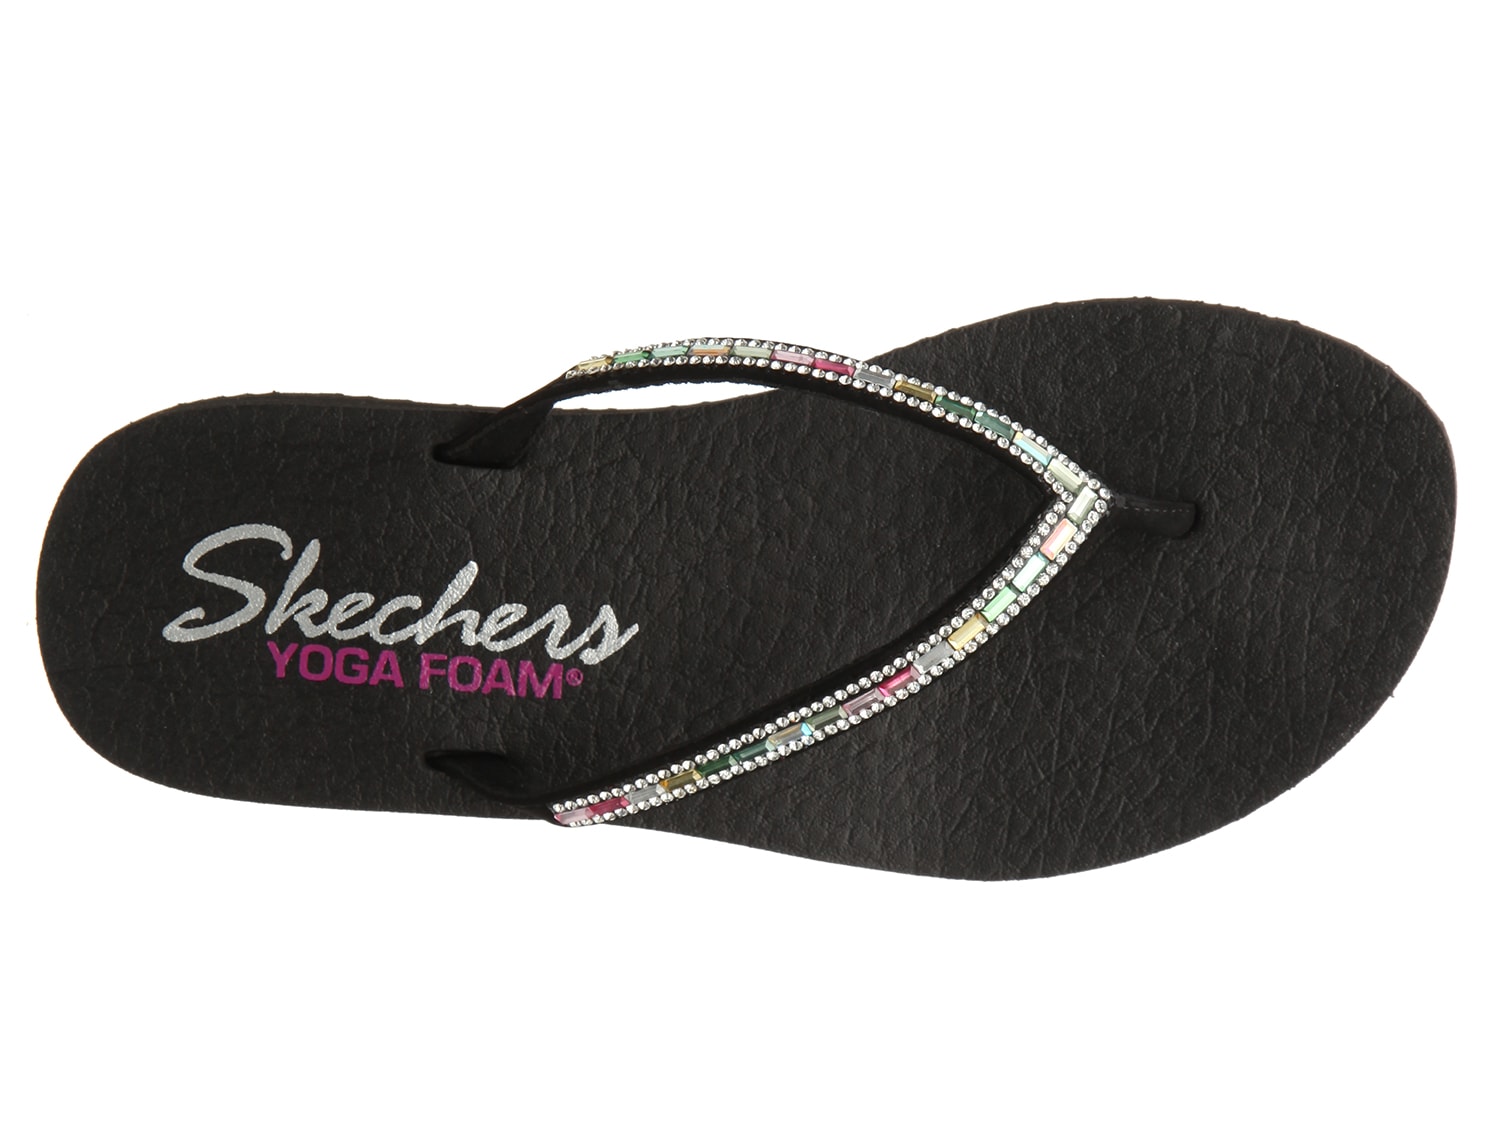 skechers yoga foam flip flops